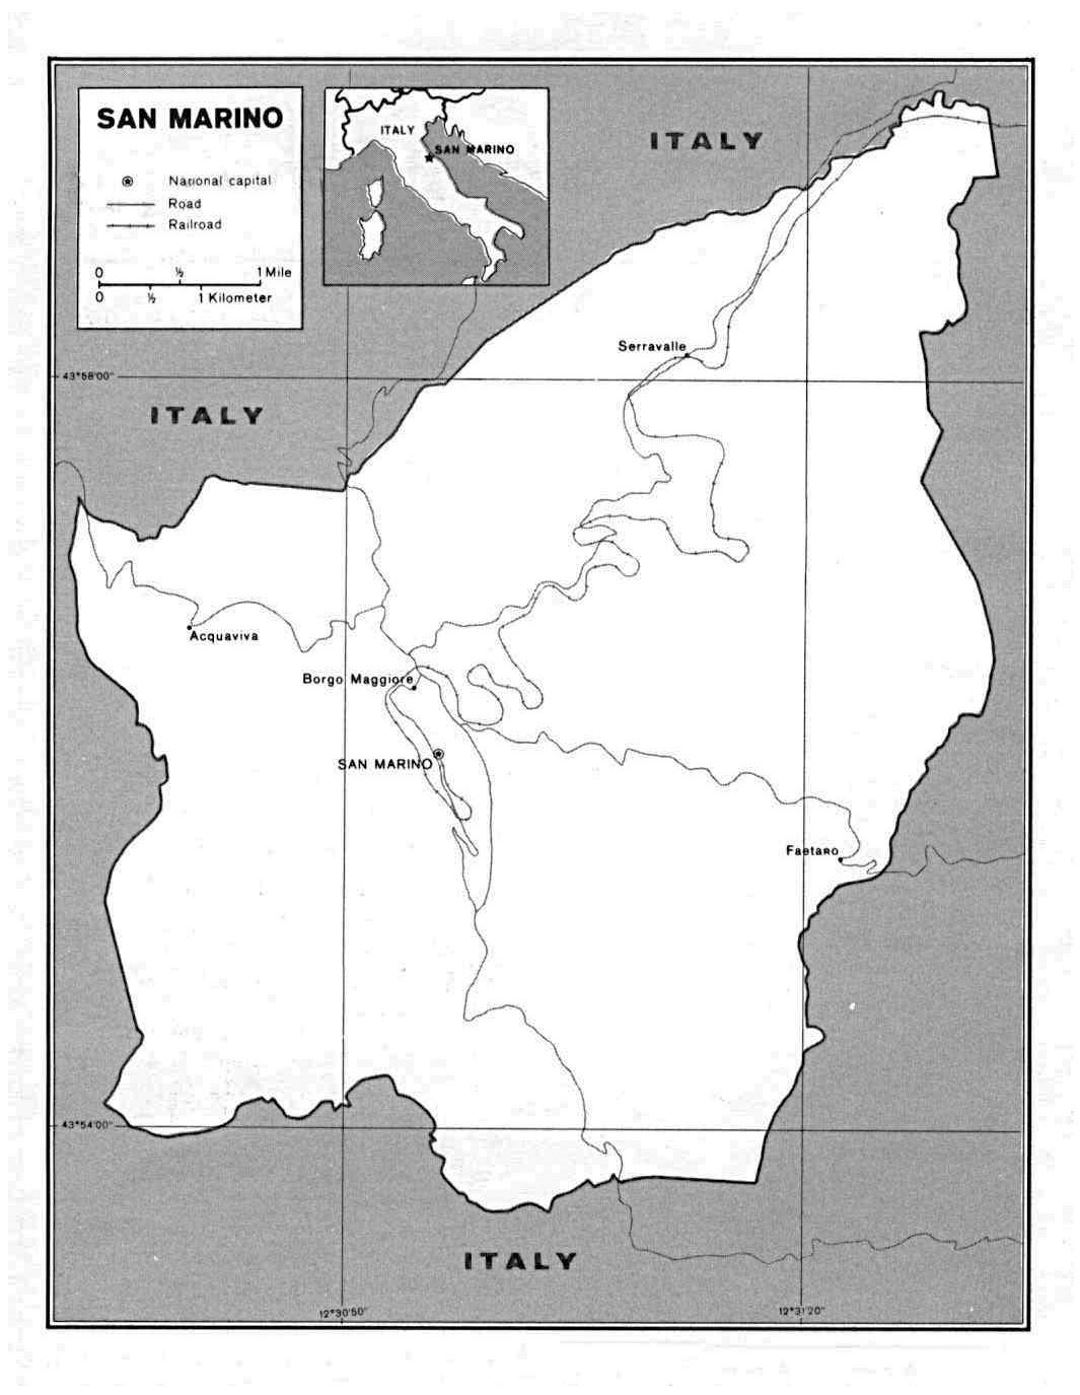 Detallado mapa político de San Marino con carreteras y ciudades